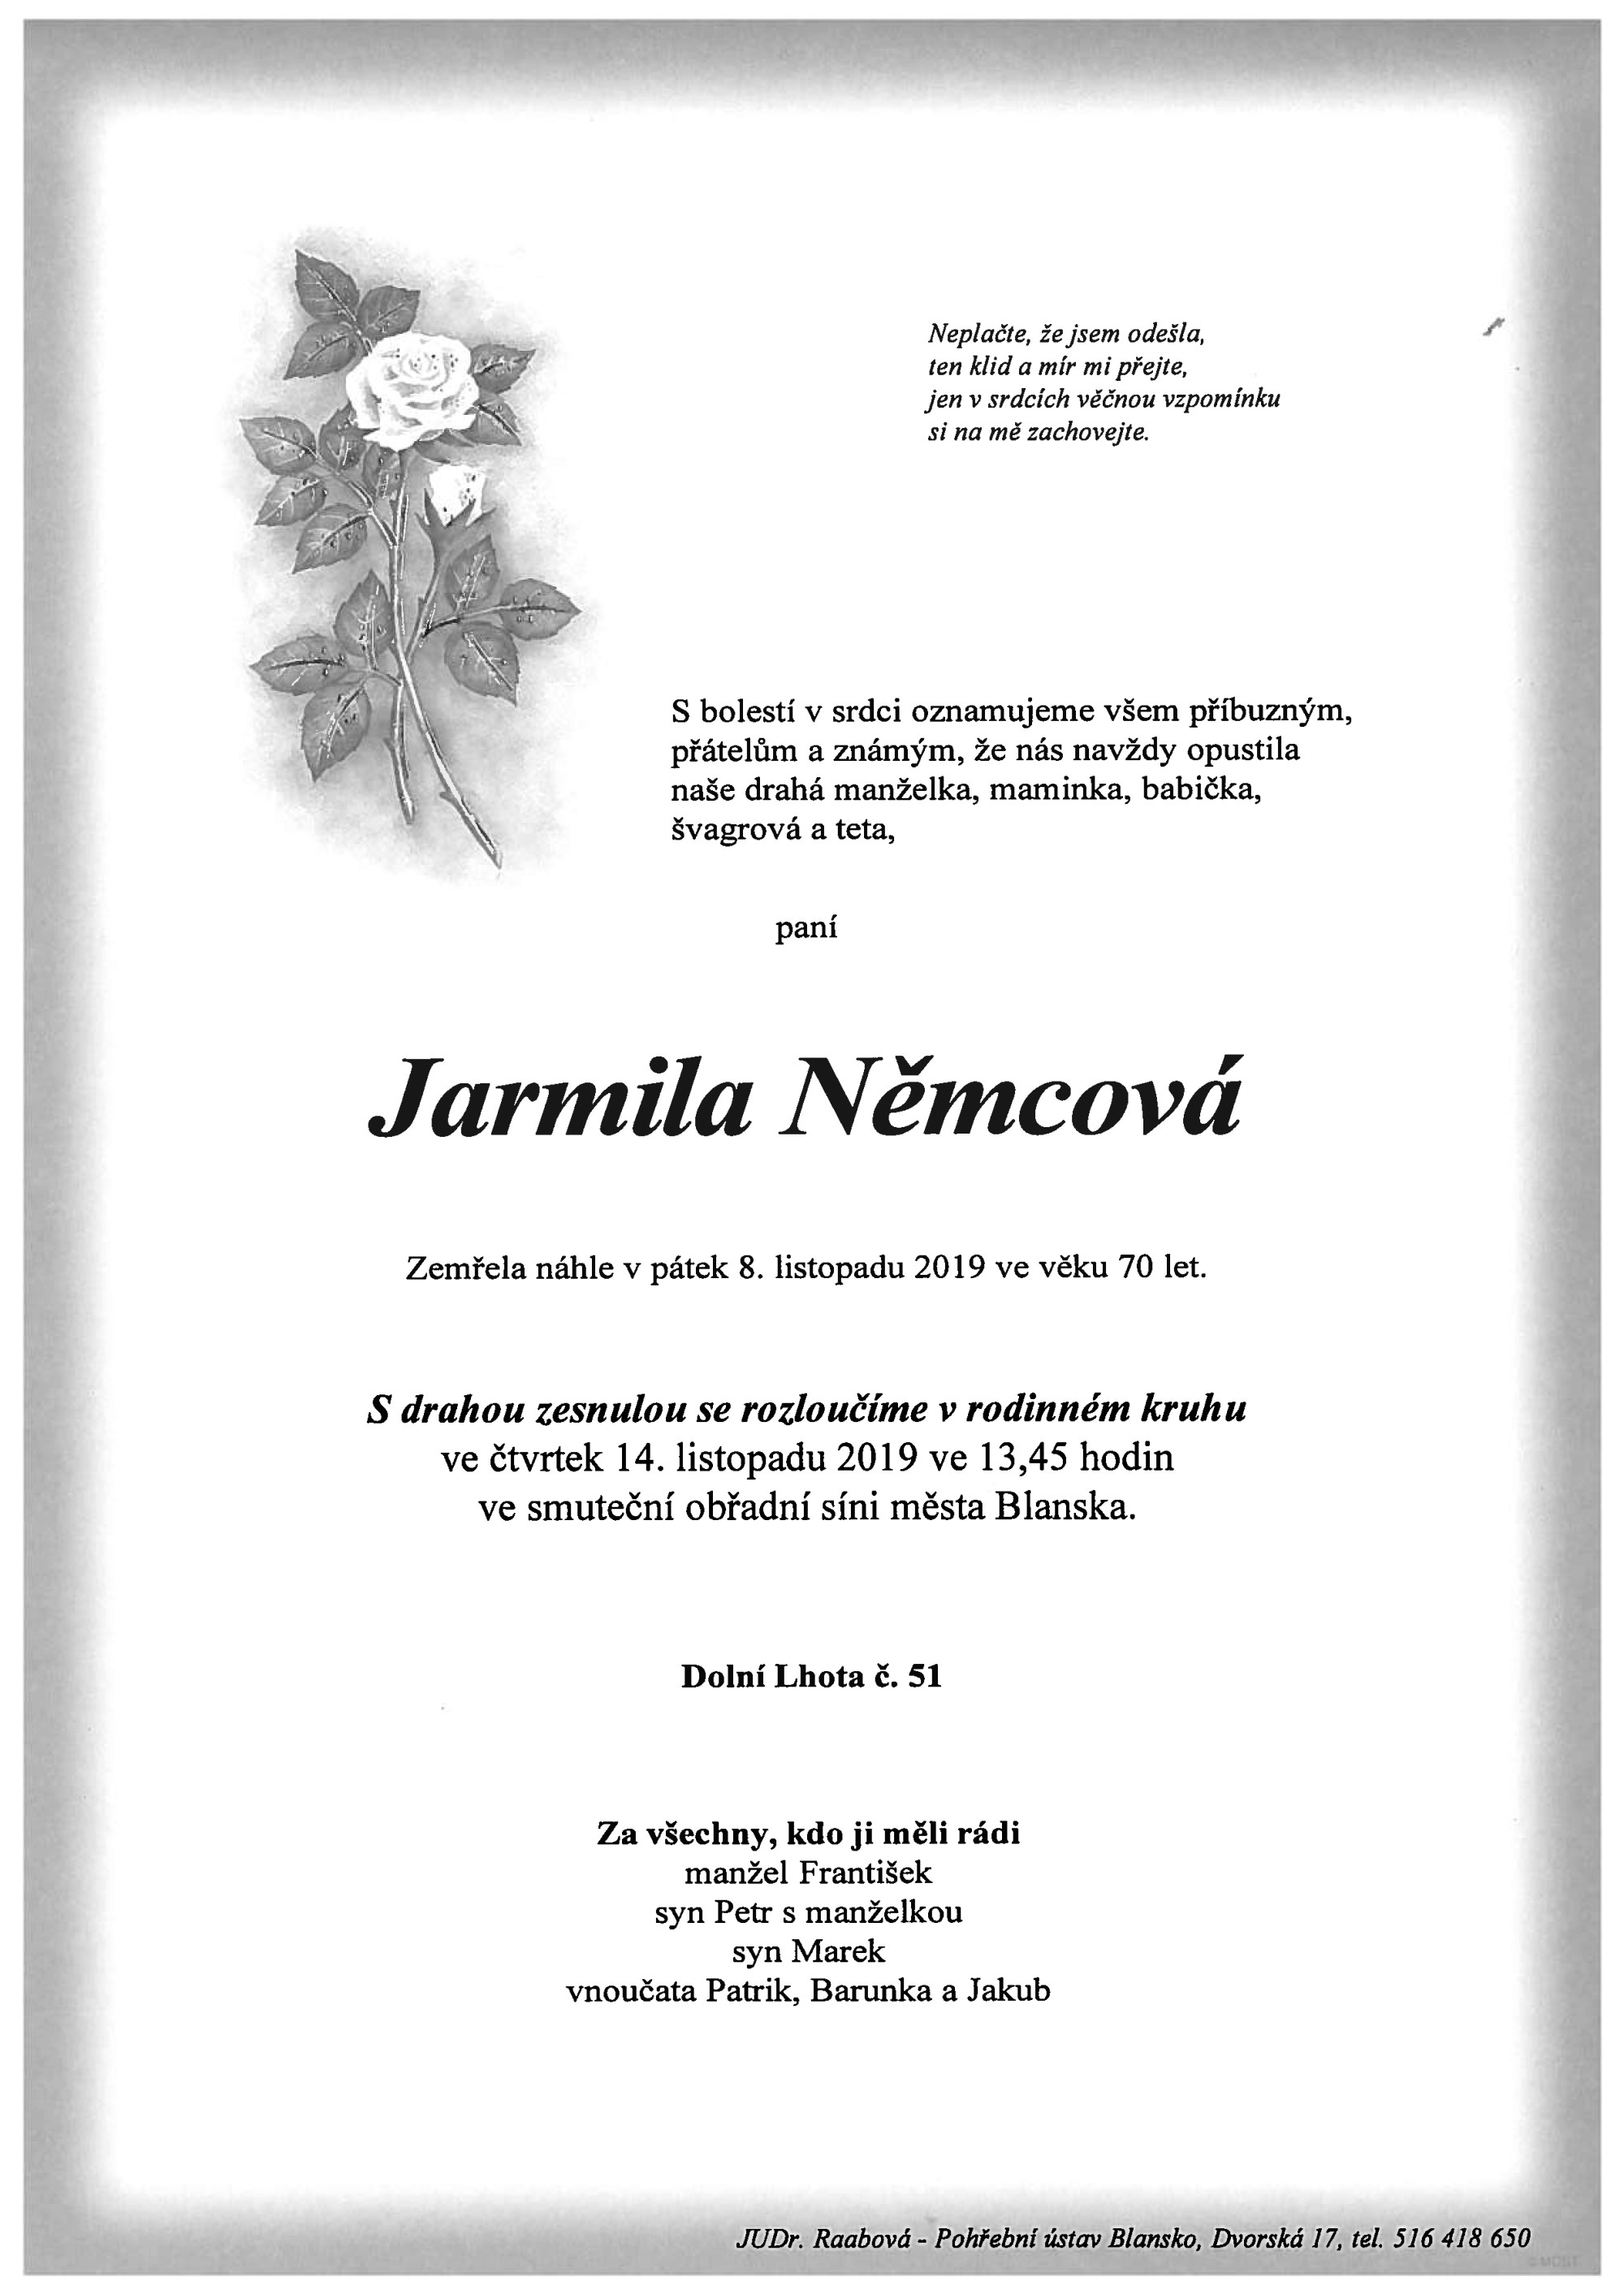 Jarmila Němcová